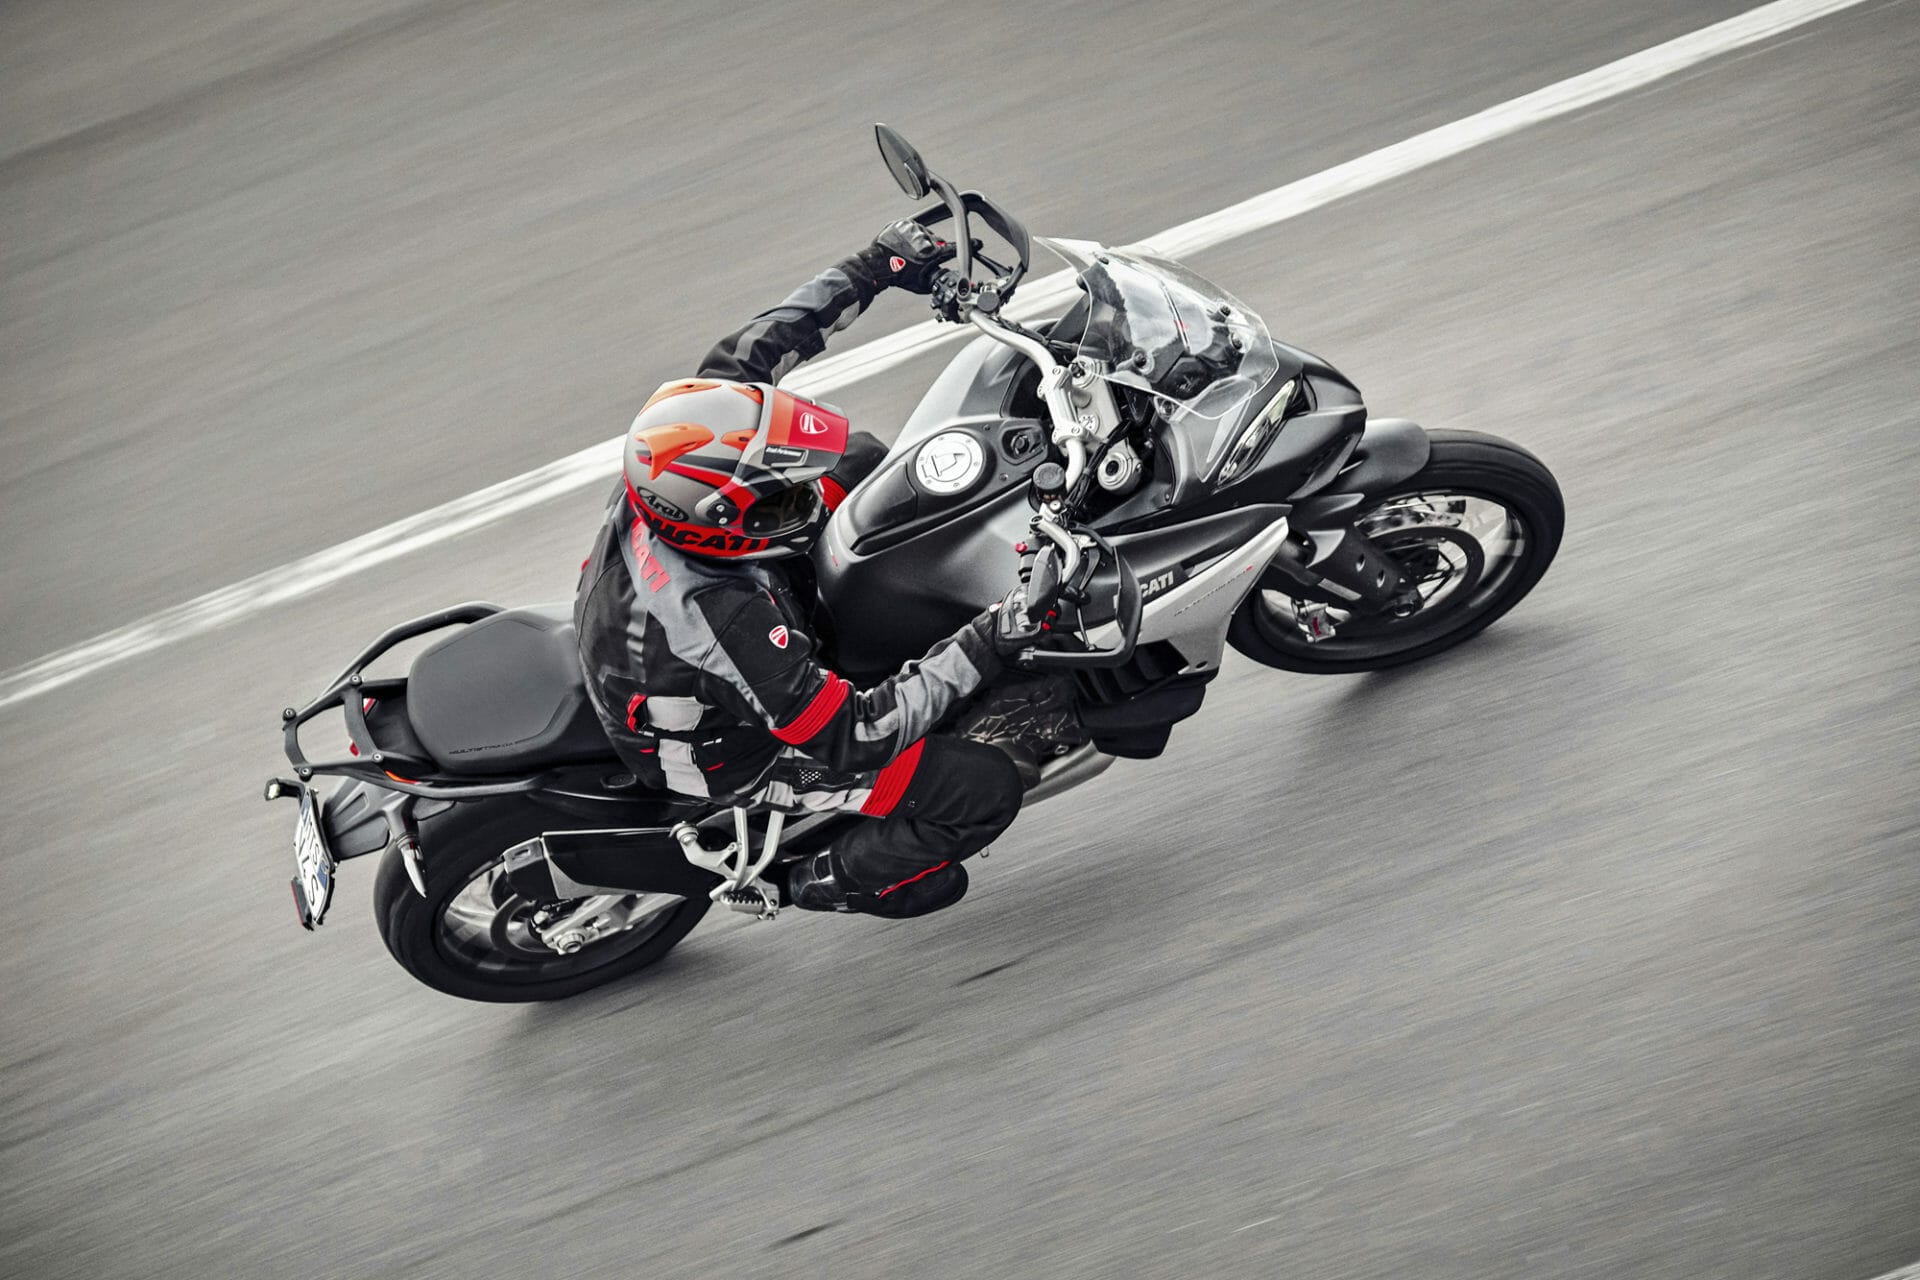 Vorgestellt - Ducati Multistrada V4 will die Straßen beherrschen
- auch in der MOTORRAD NACHRICHTEN APP